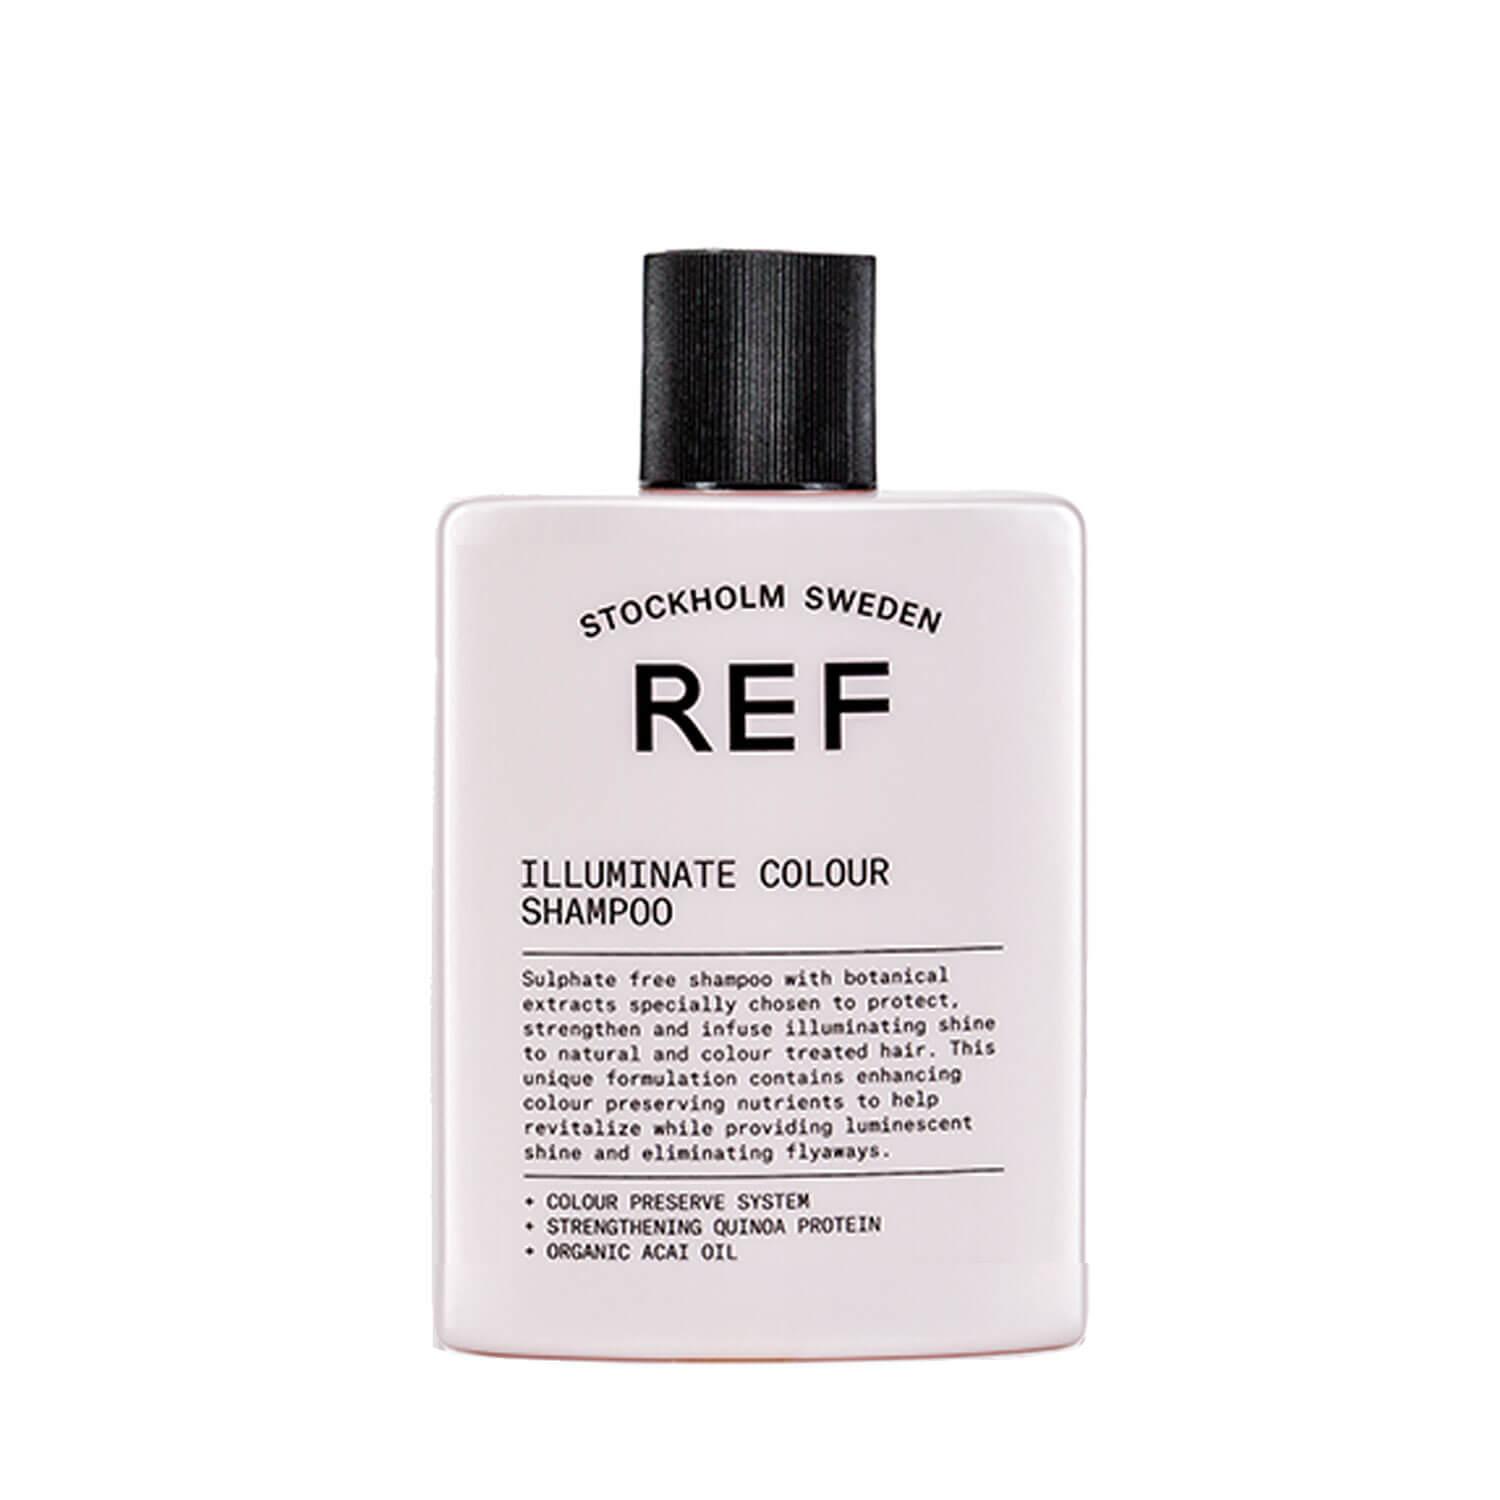 REF Shampoo - Illuminate Colour Shampoo